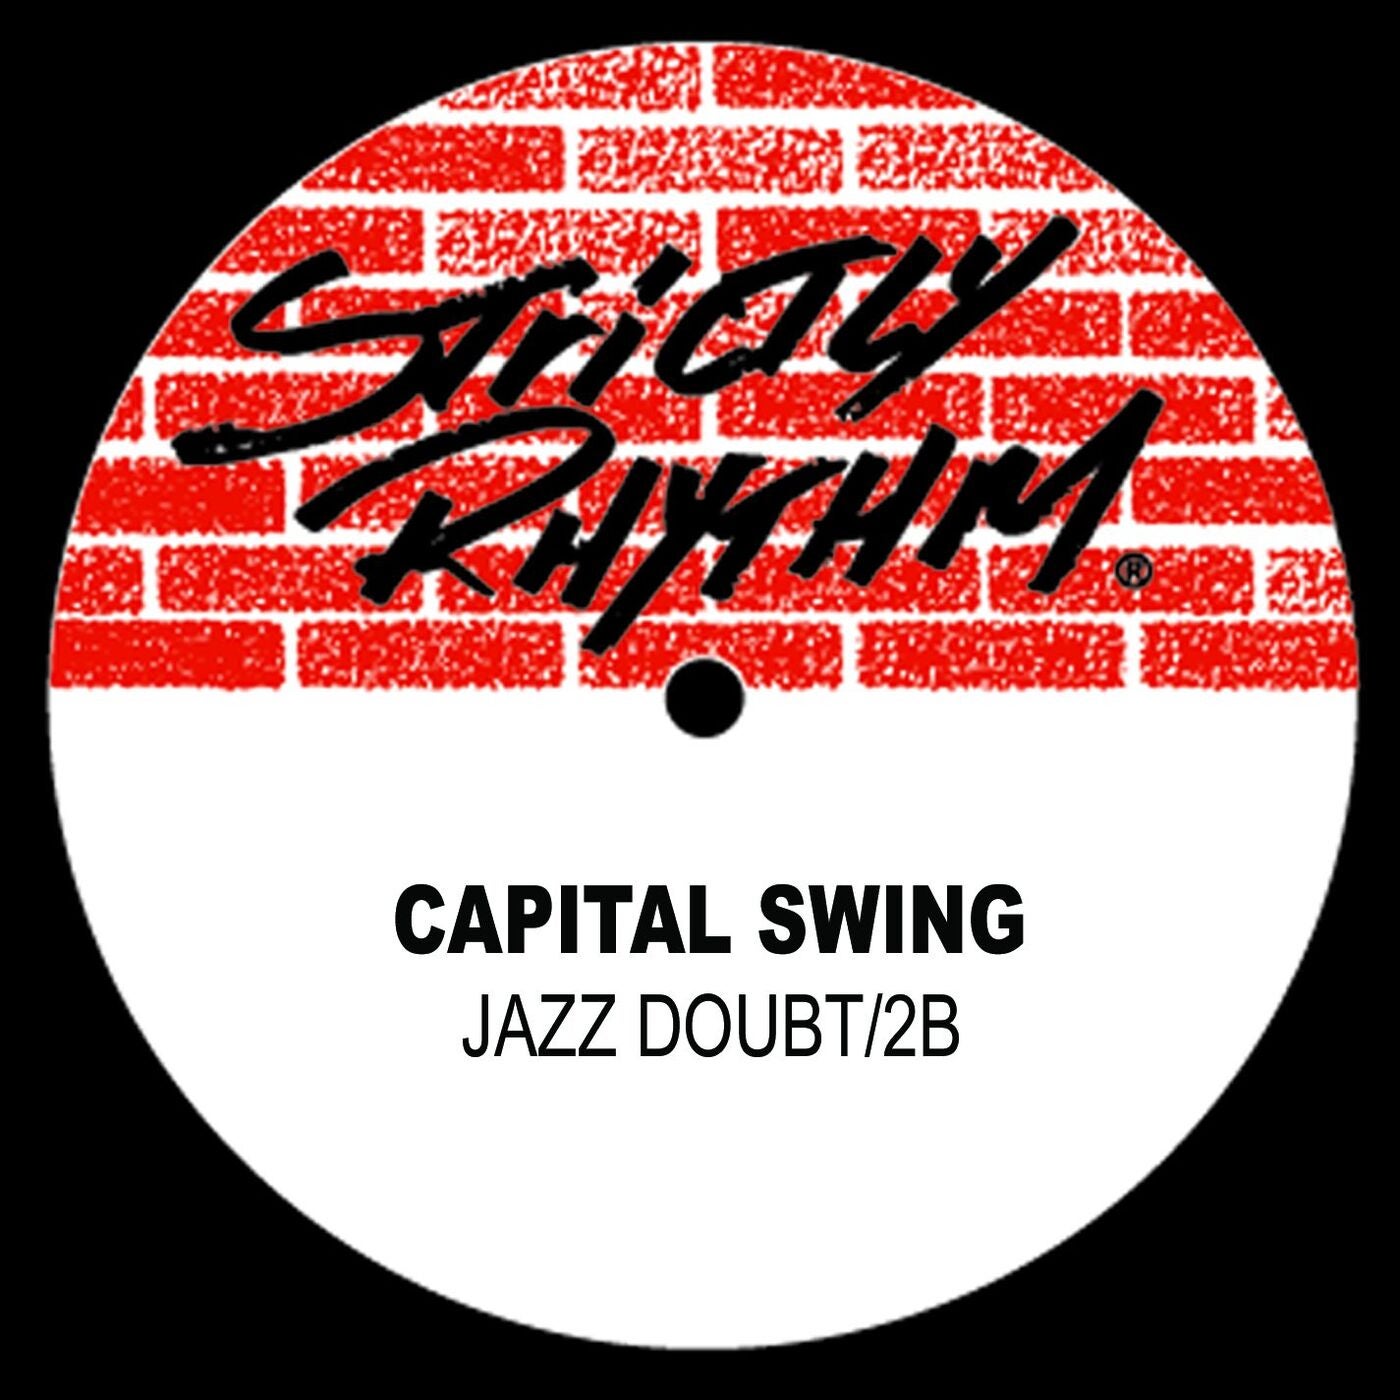 Jazz Doubt / 2B